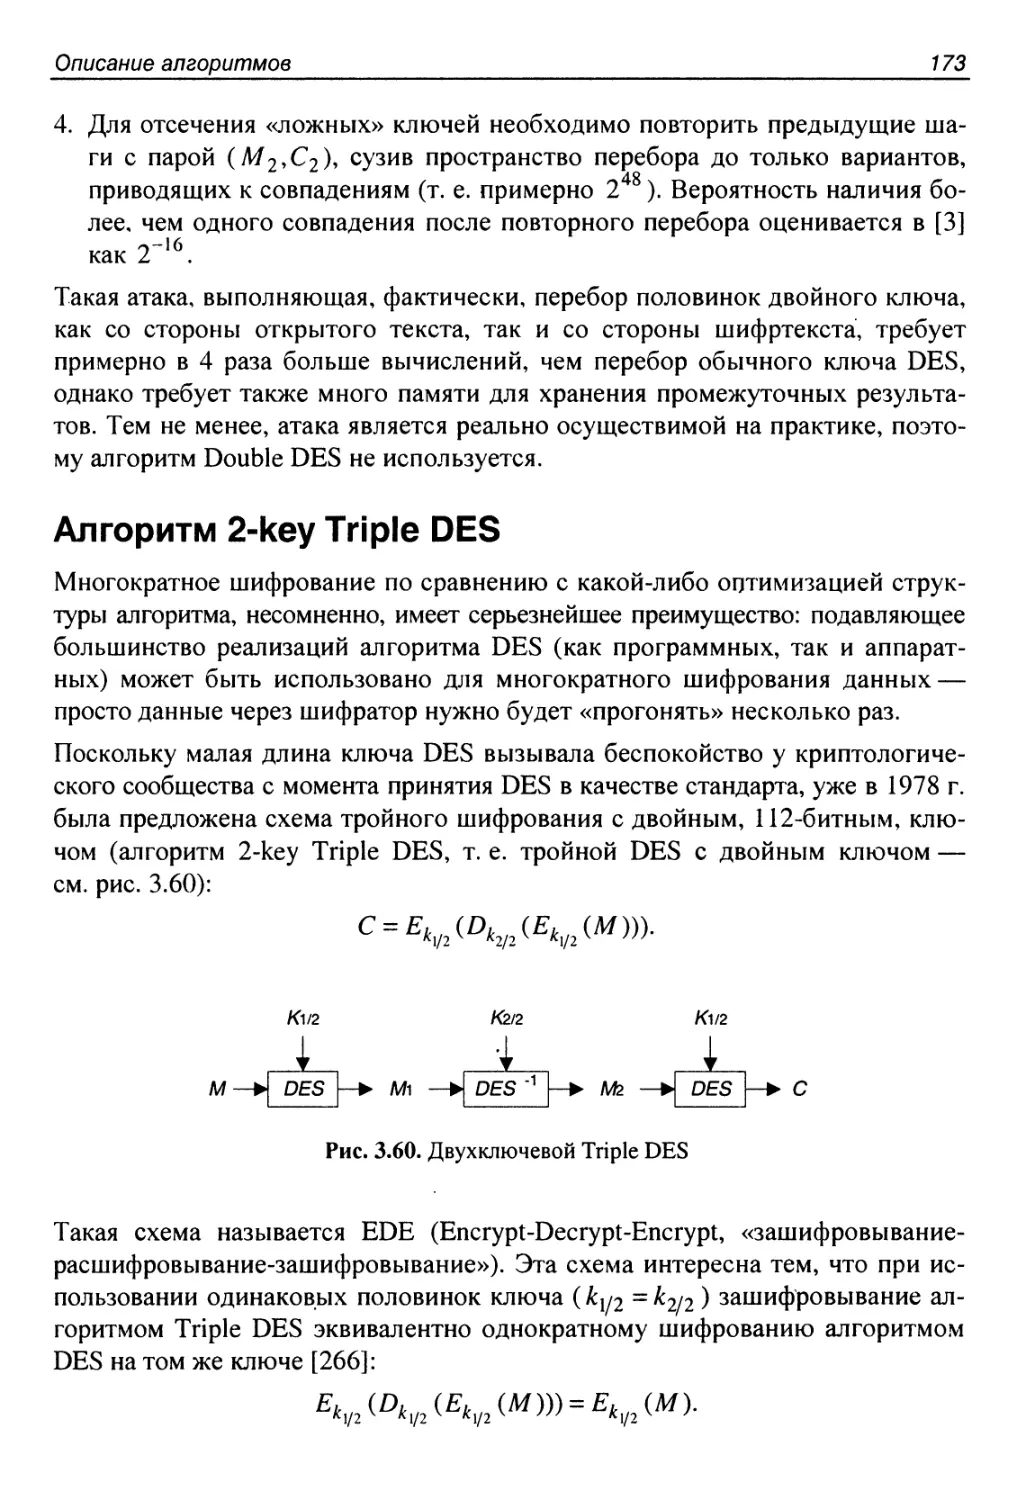 Алгоритм 2-key Triple DES